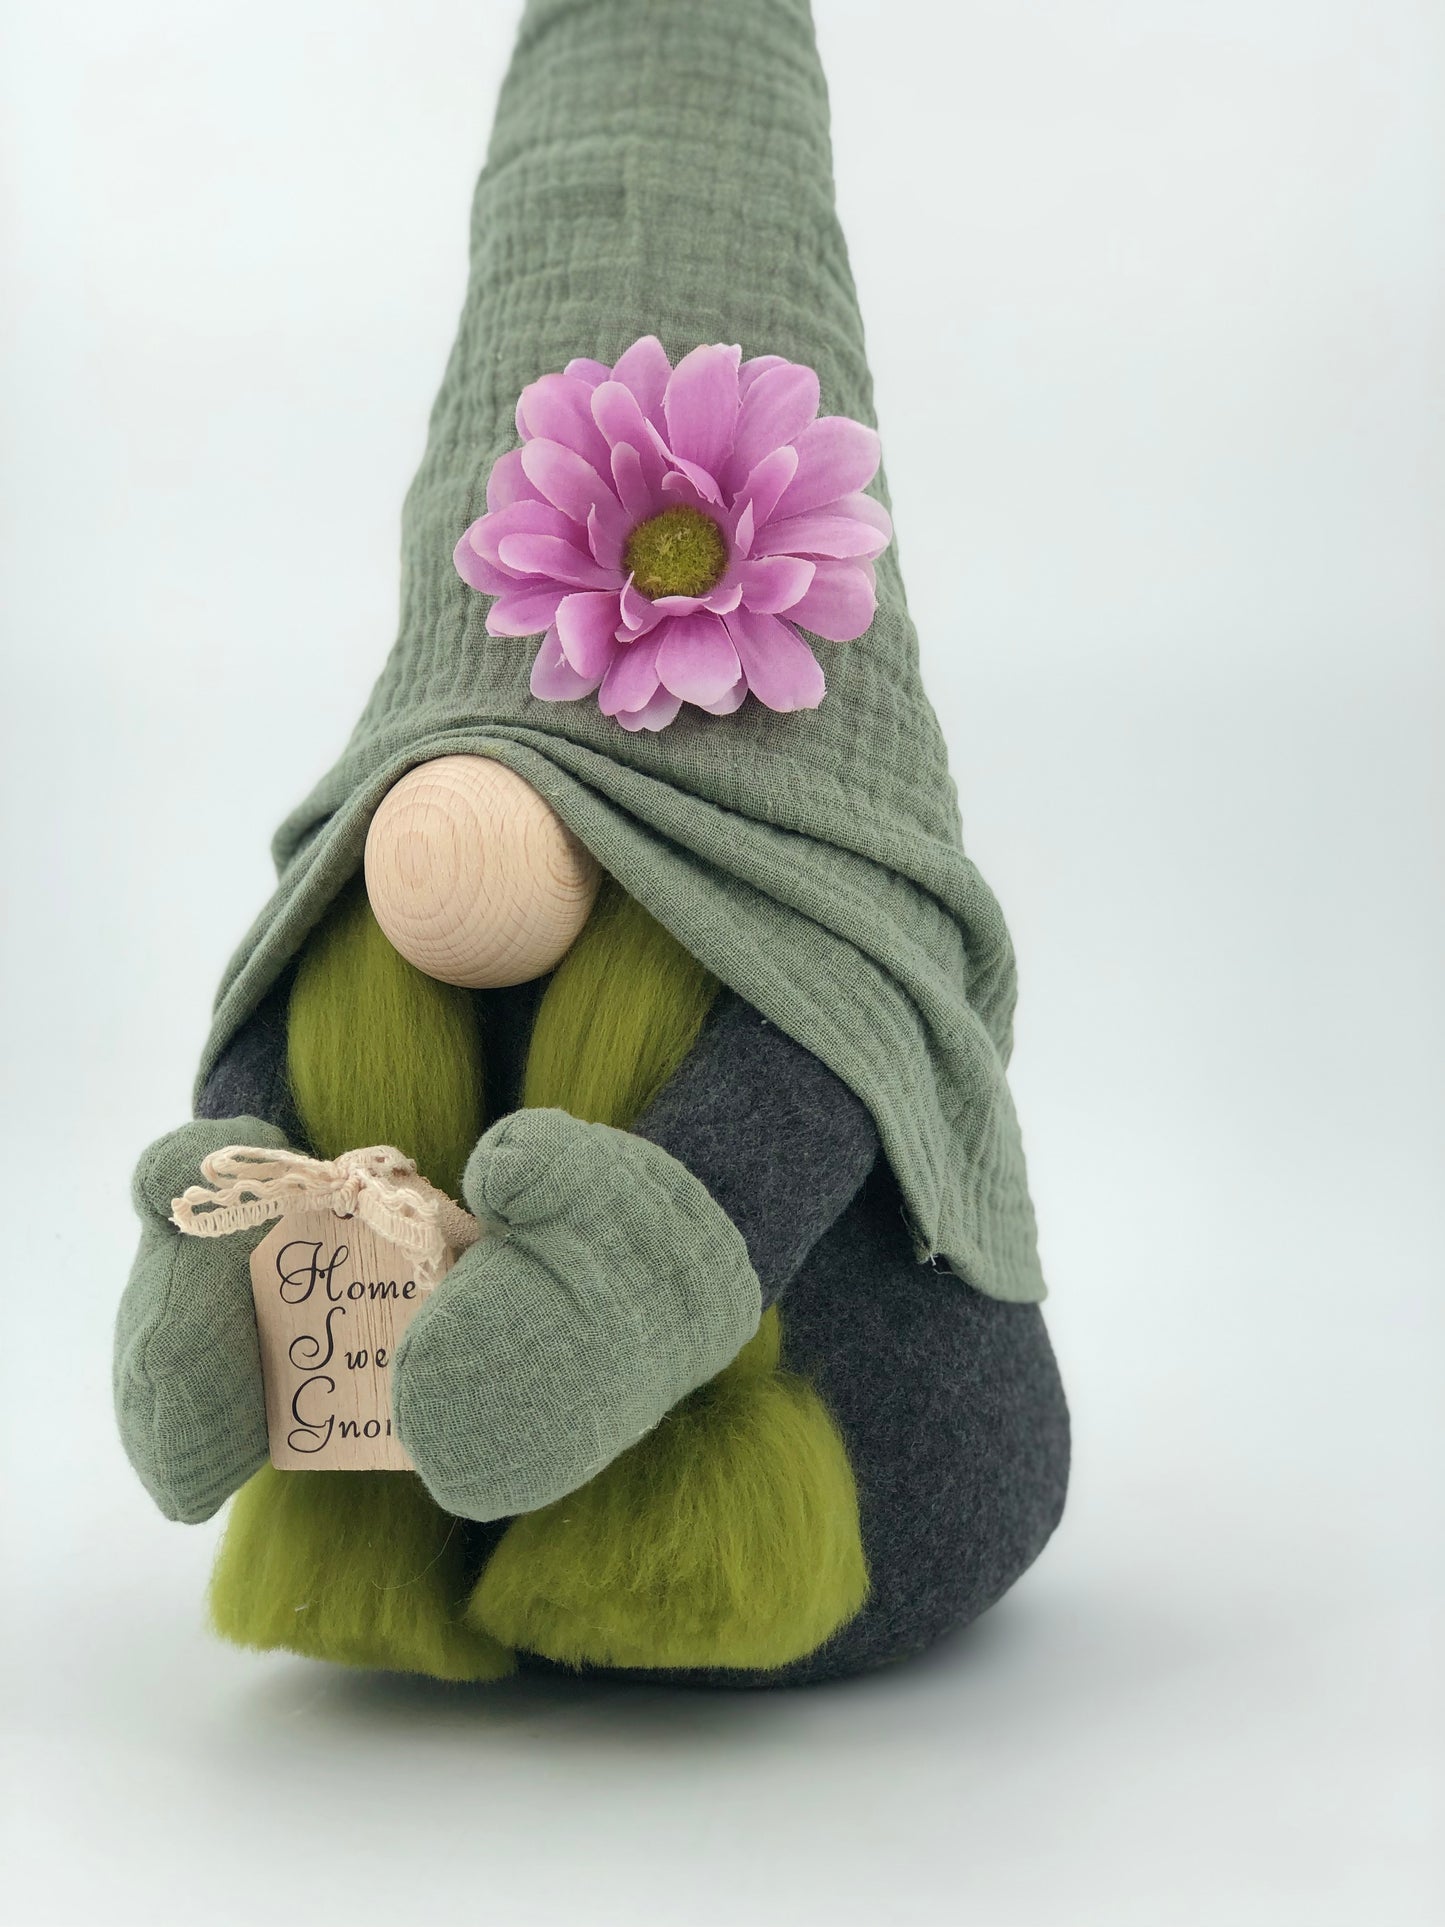 Gnome de Printemps " Home sweet gnome "